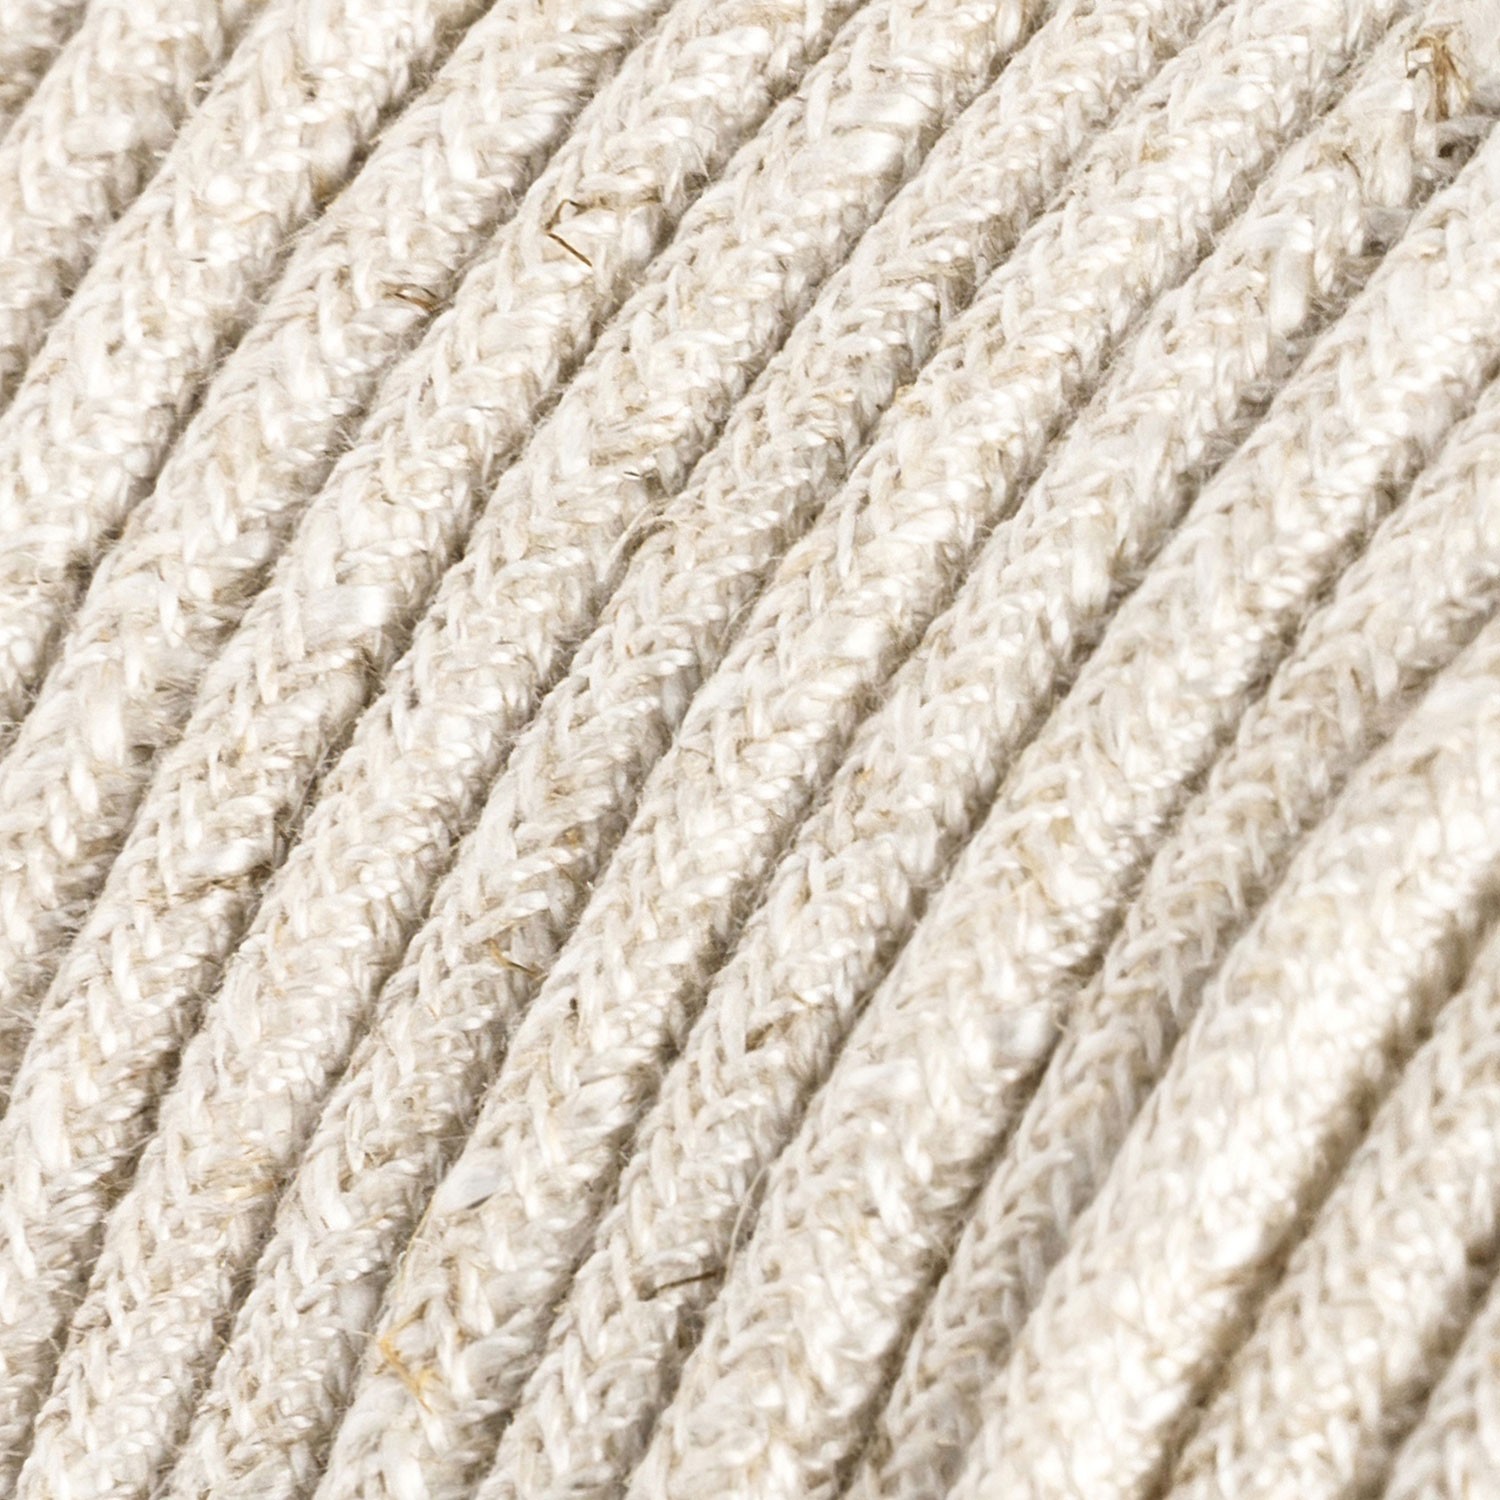 Ultra mehek silikonski kabel Melange - RN01 okrogel 2x0,75 mm